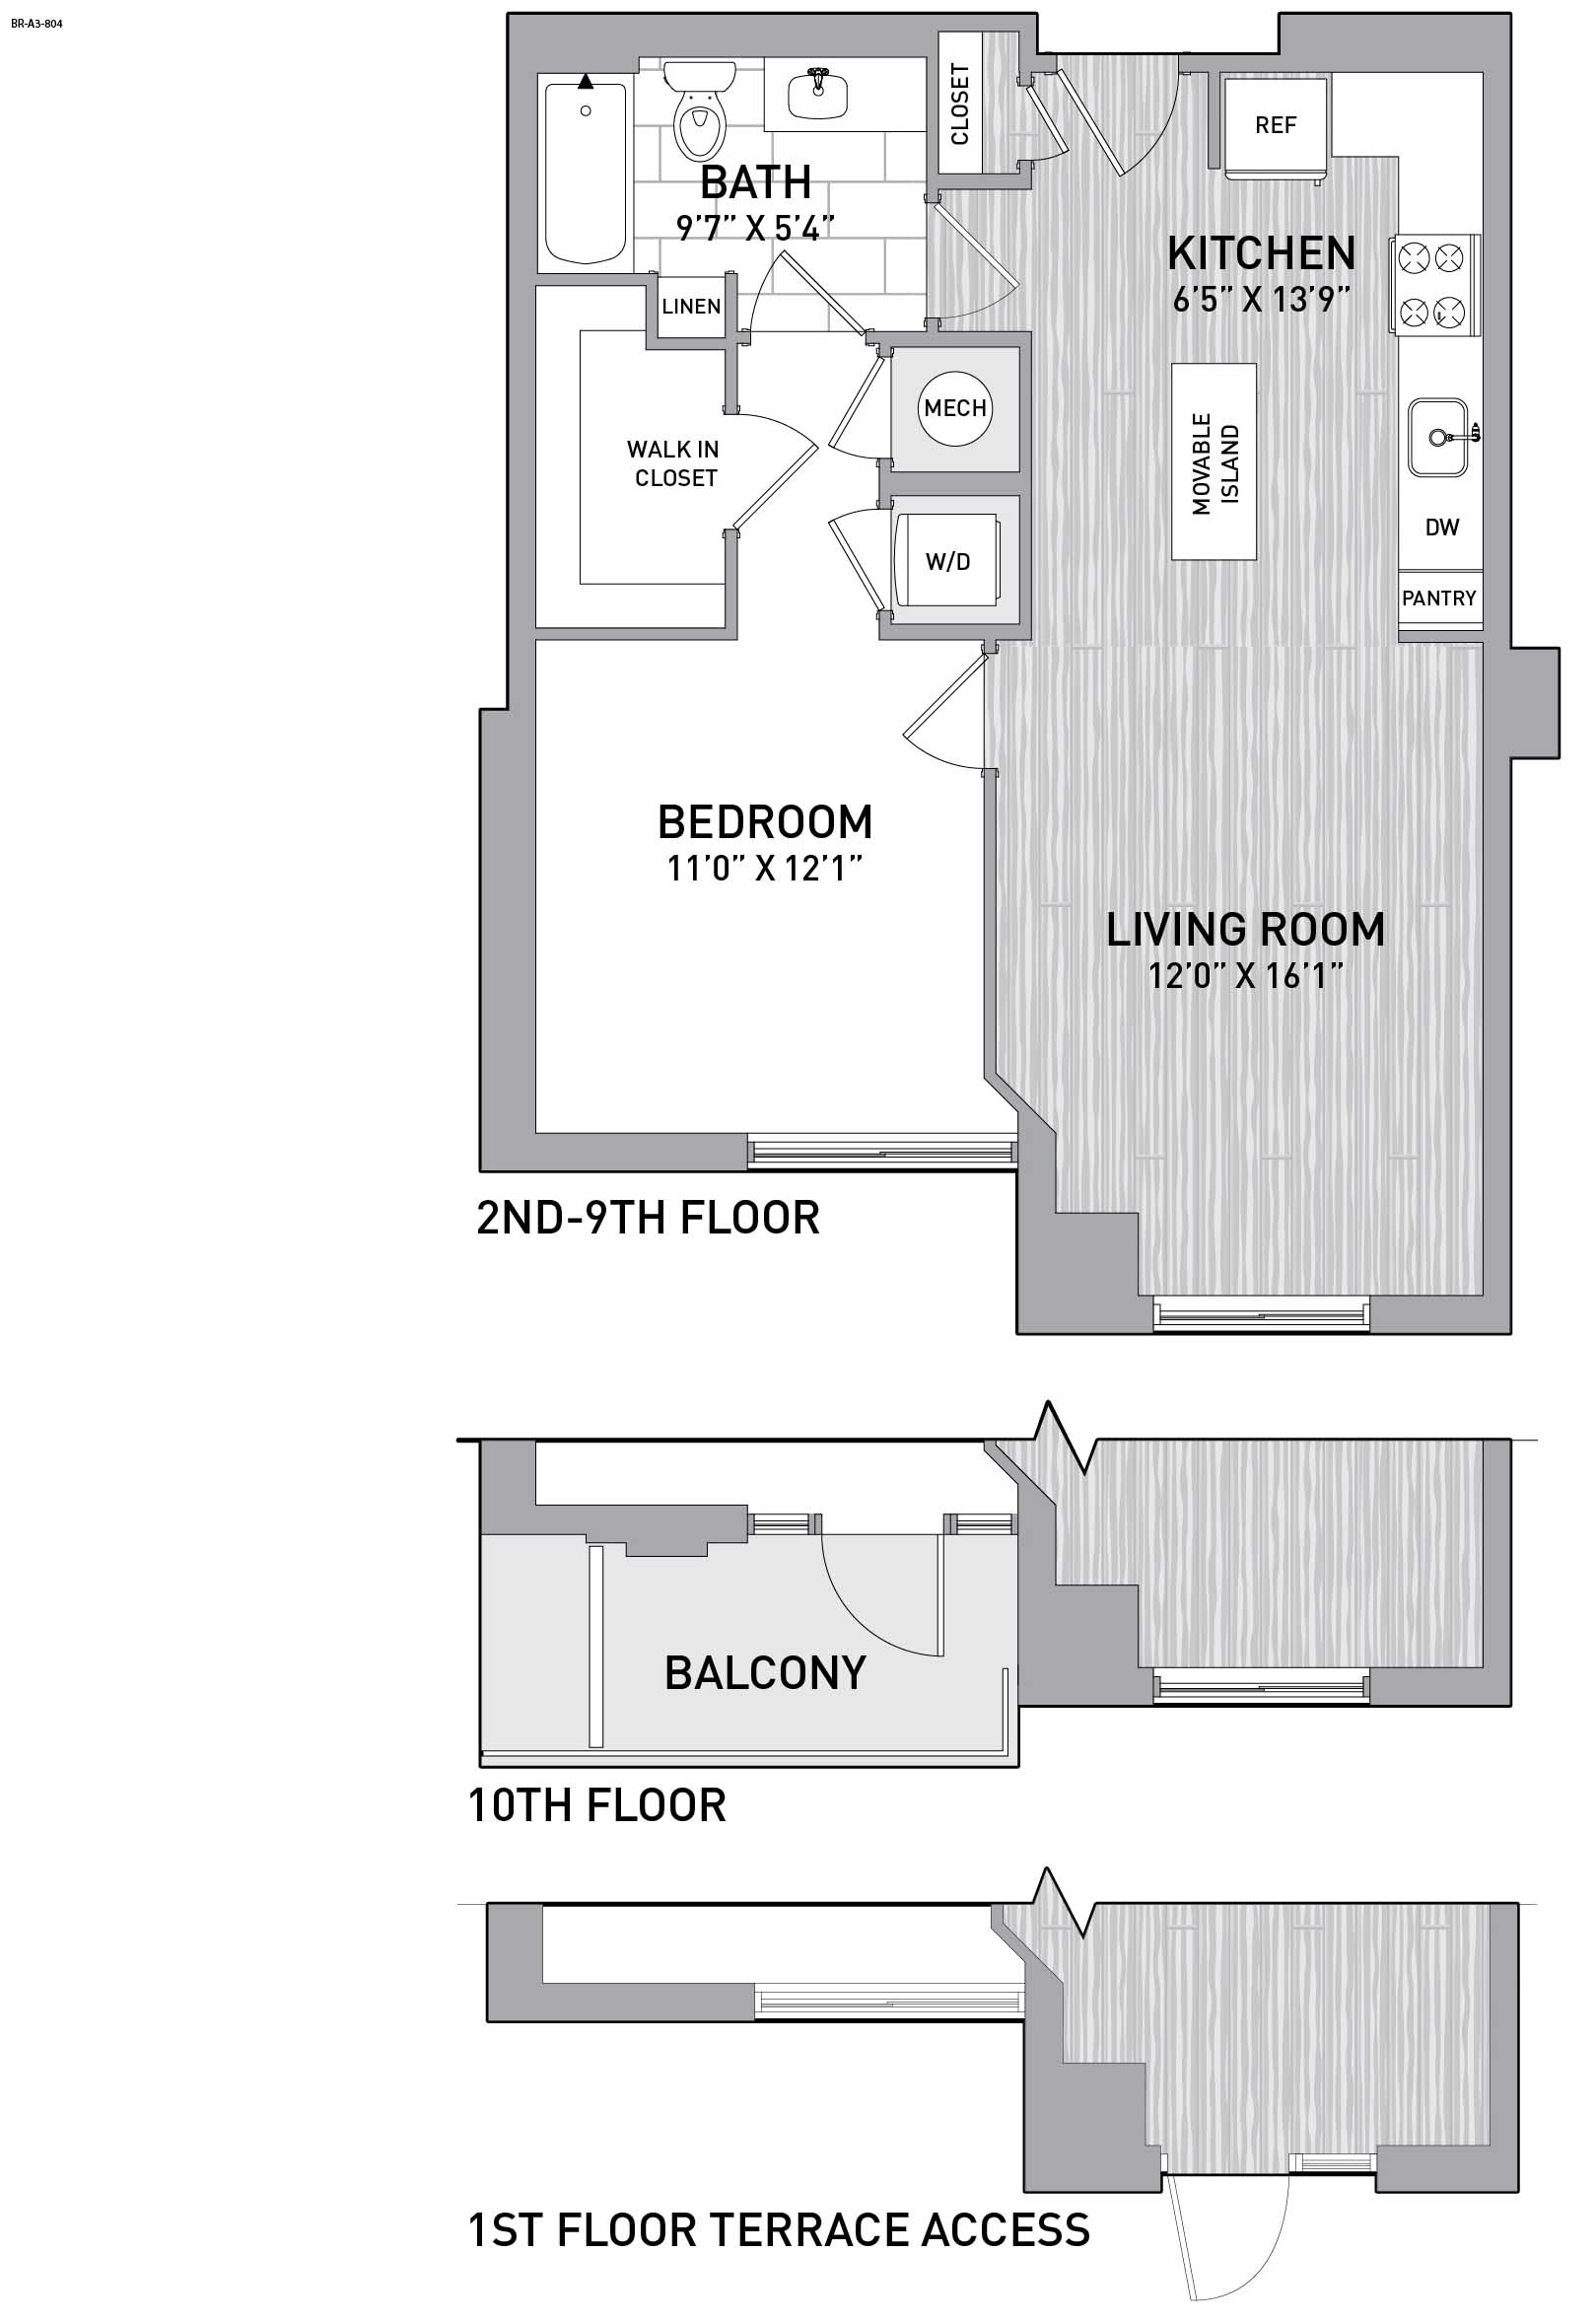 Floorplan Image of unit 151-0809